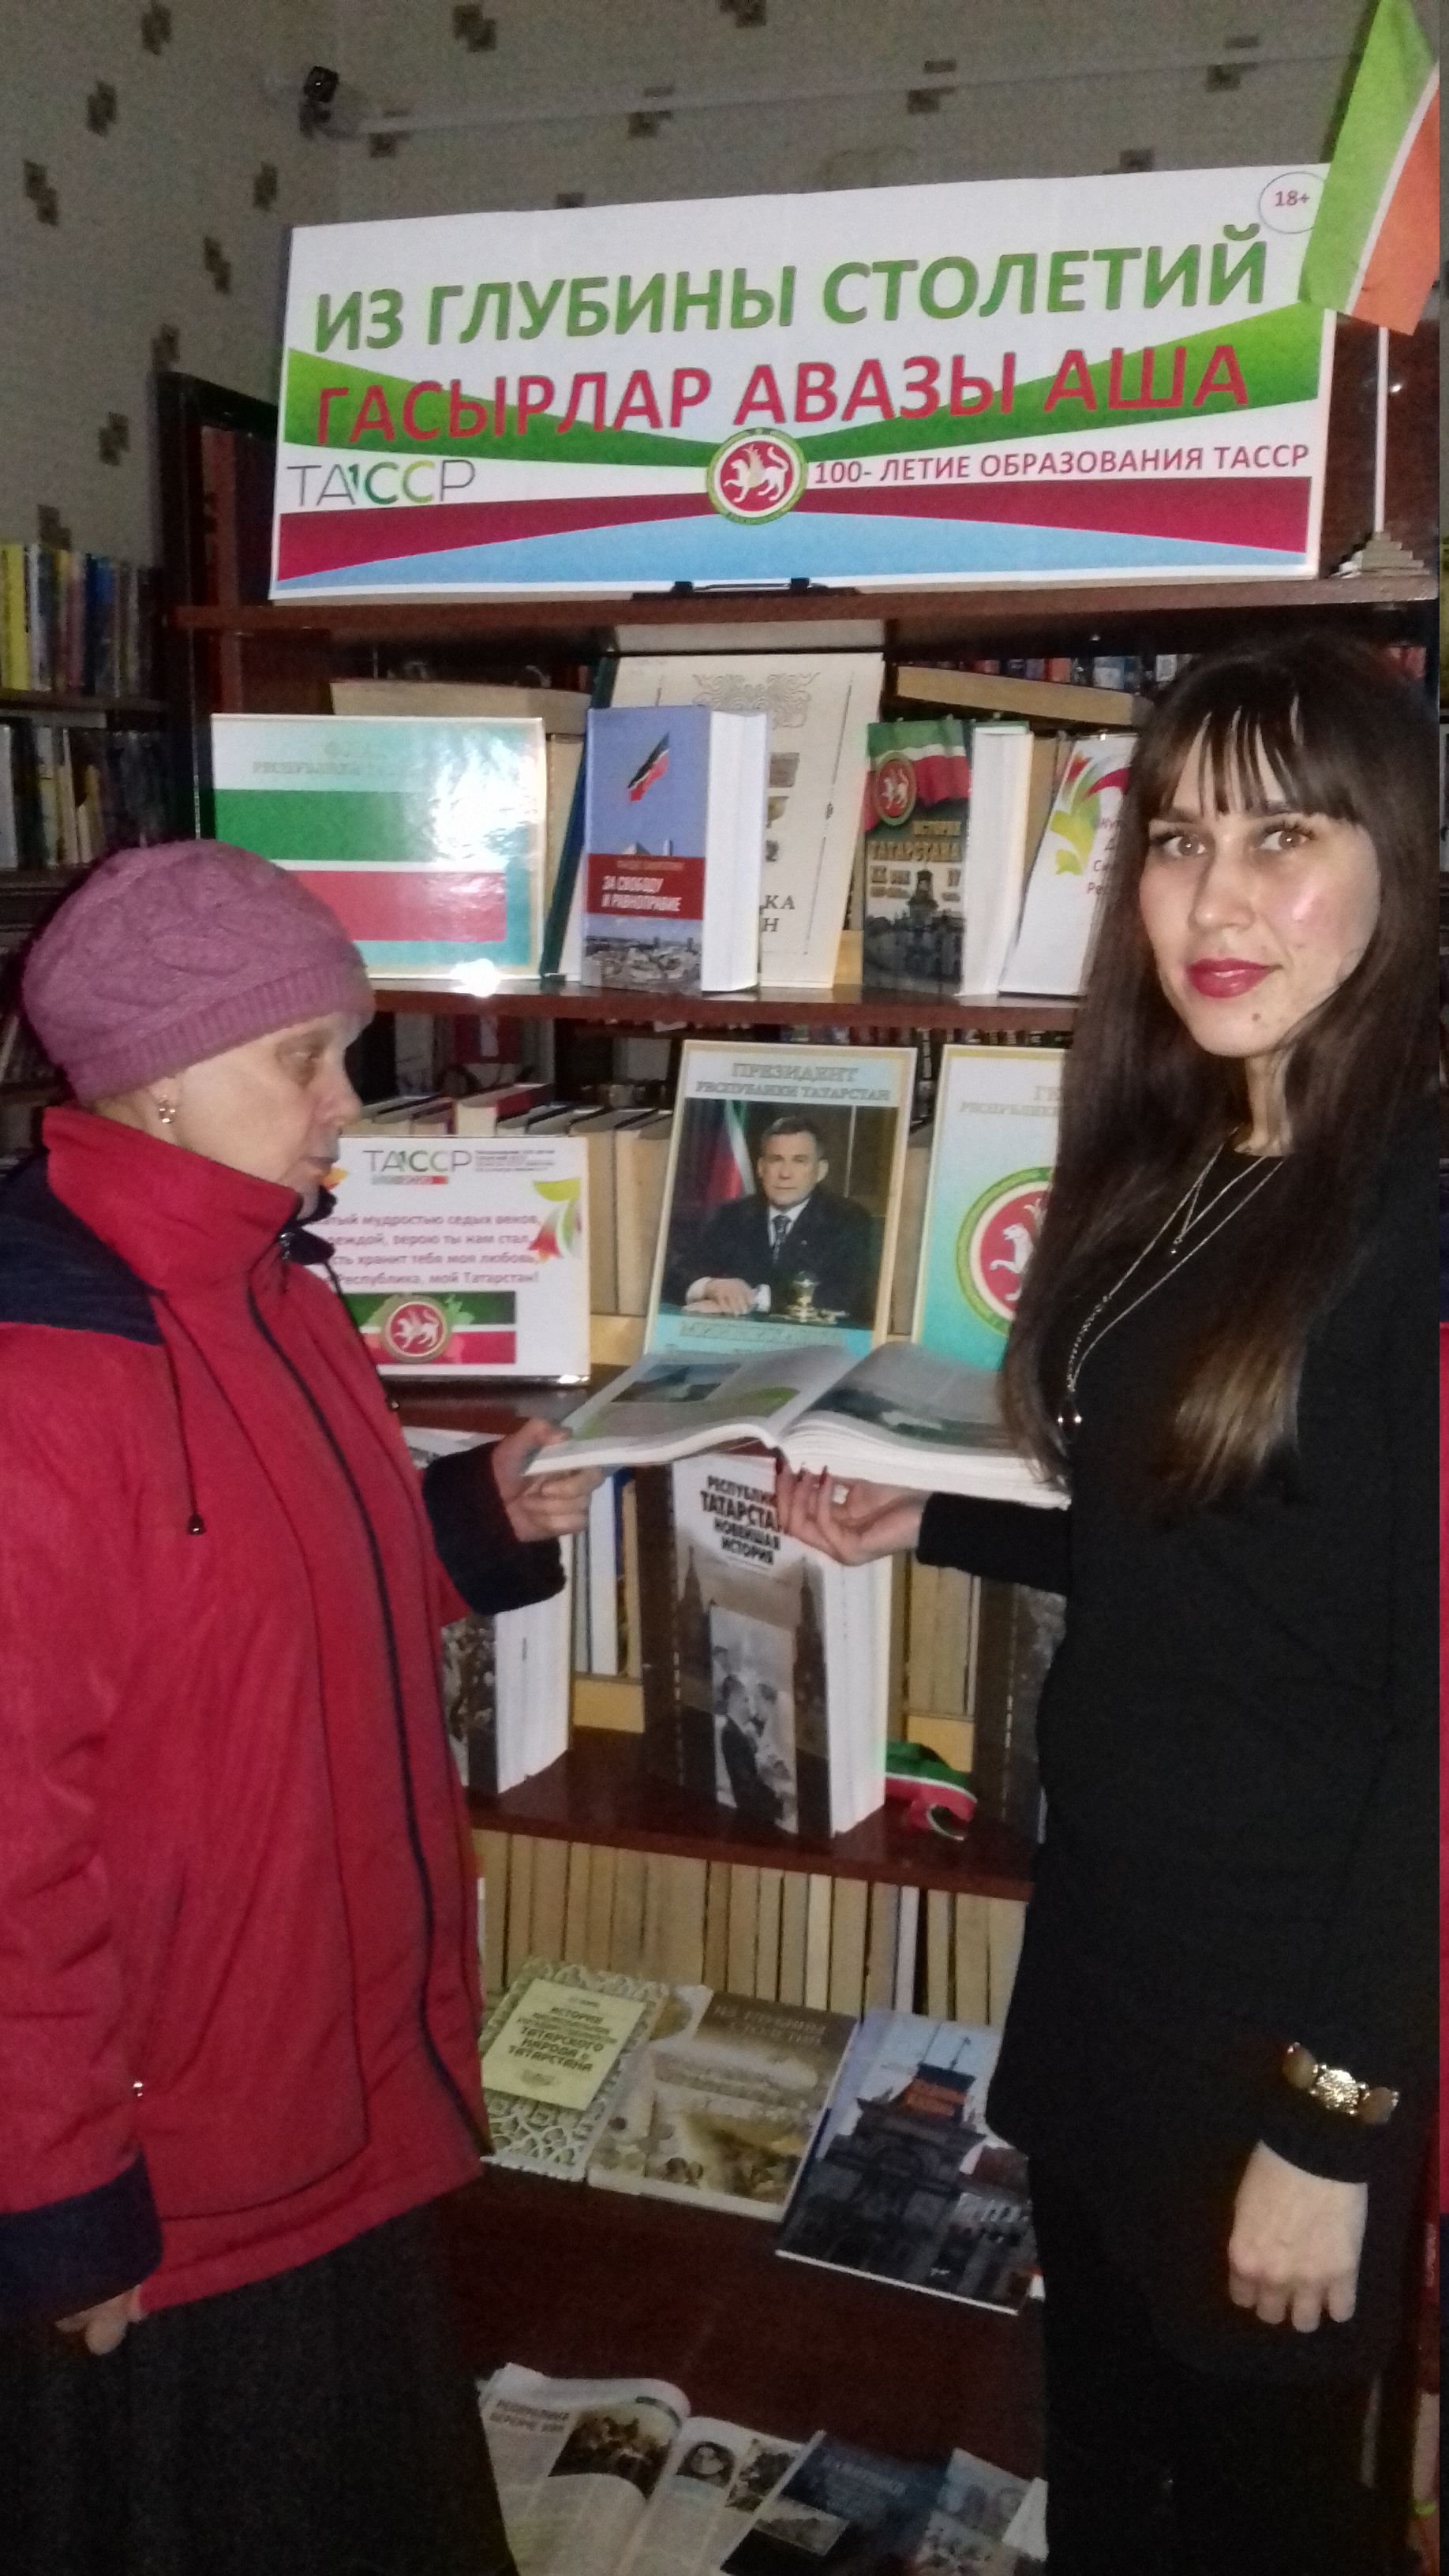 В центральной библиотеке Бугульмы организована книжная выставка «Из глубины столетий» - «Гасырлар авазы аша»